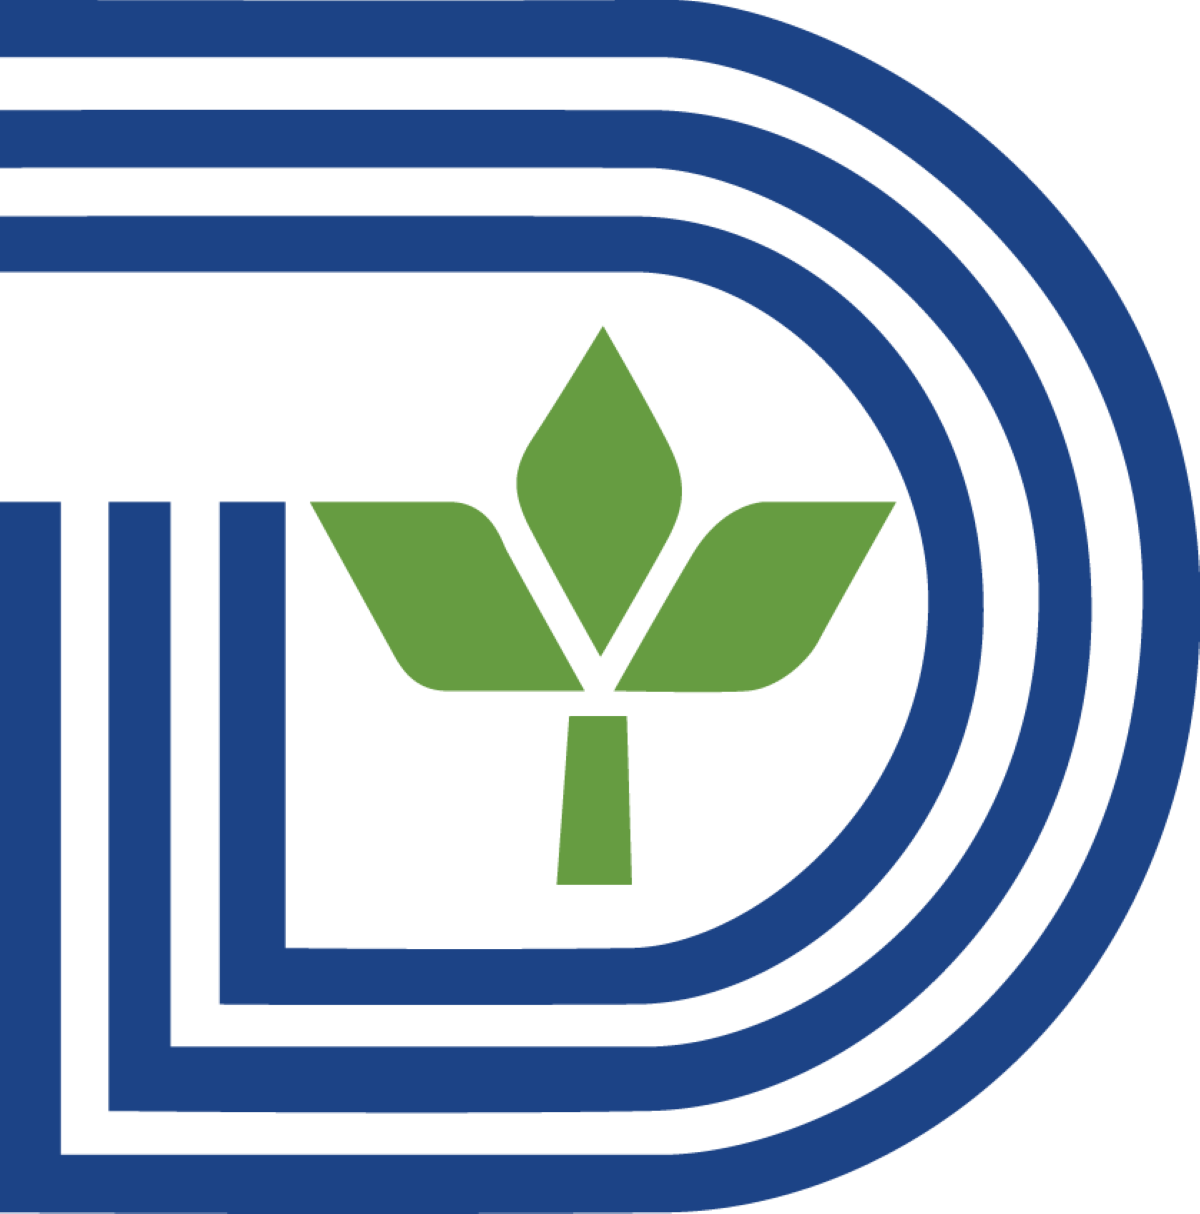 Dallas, Texas - Official Seal or Logo